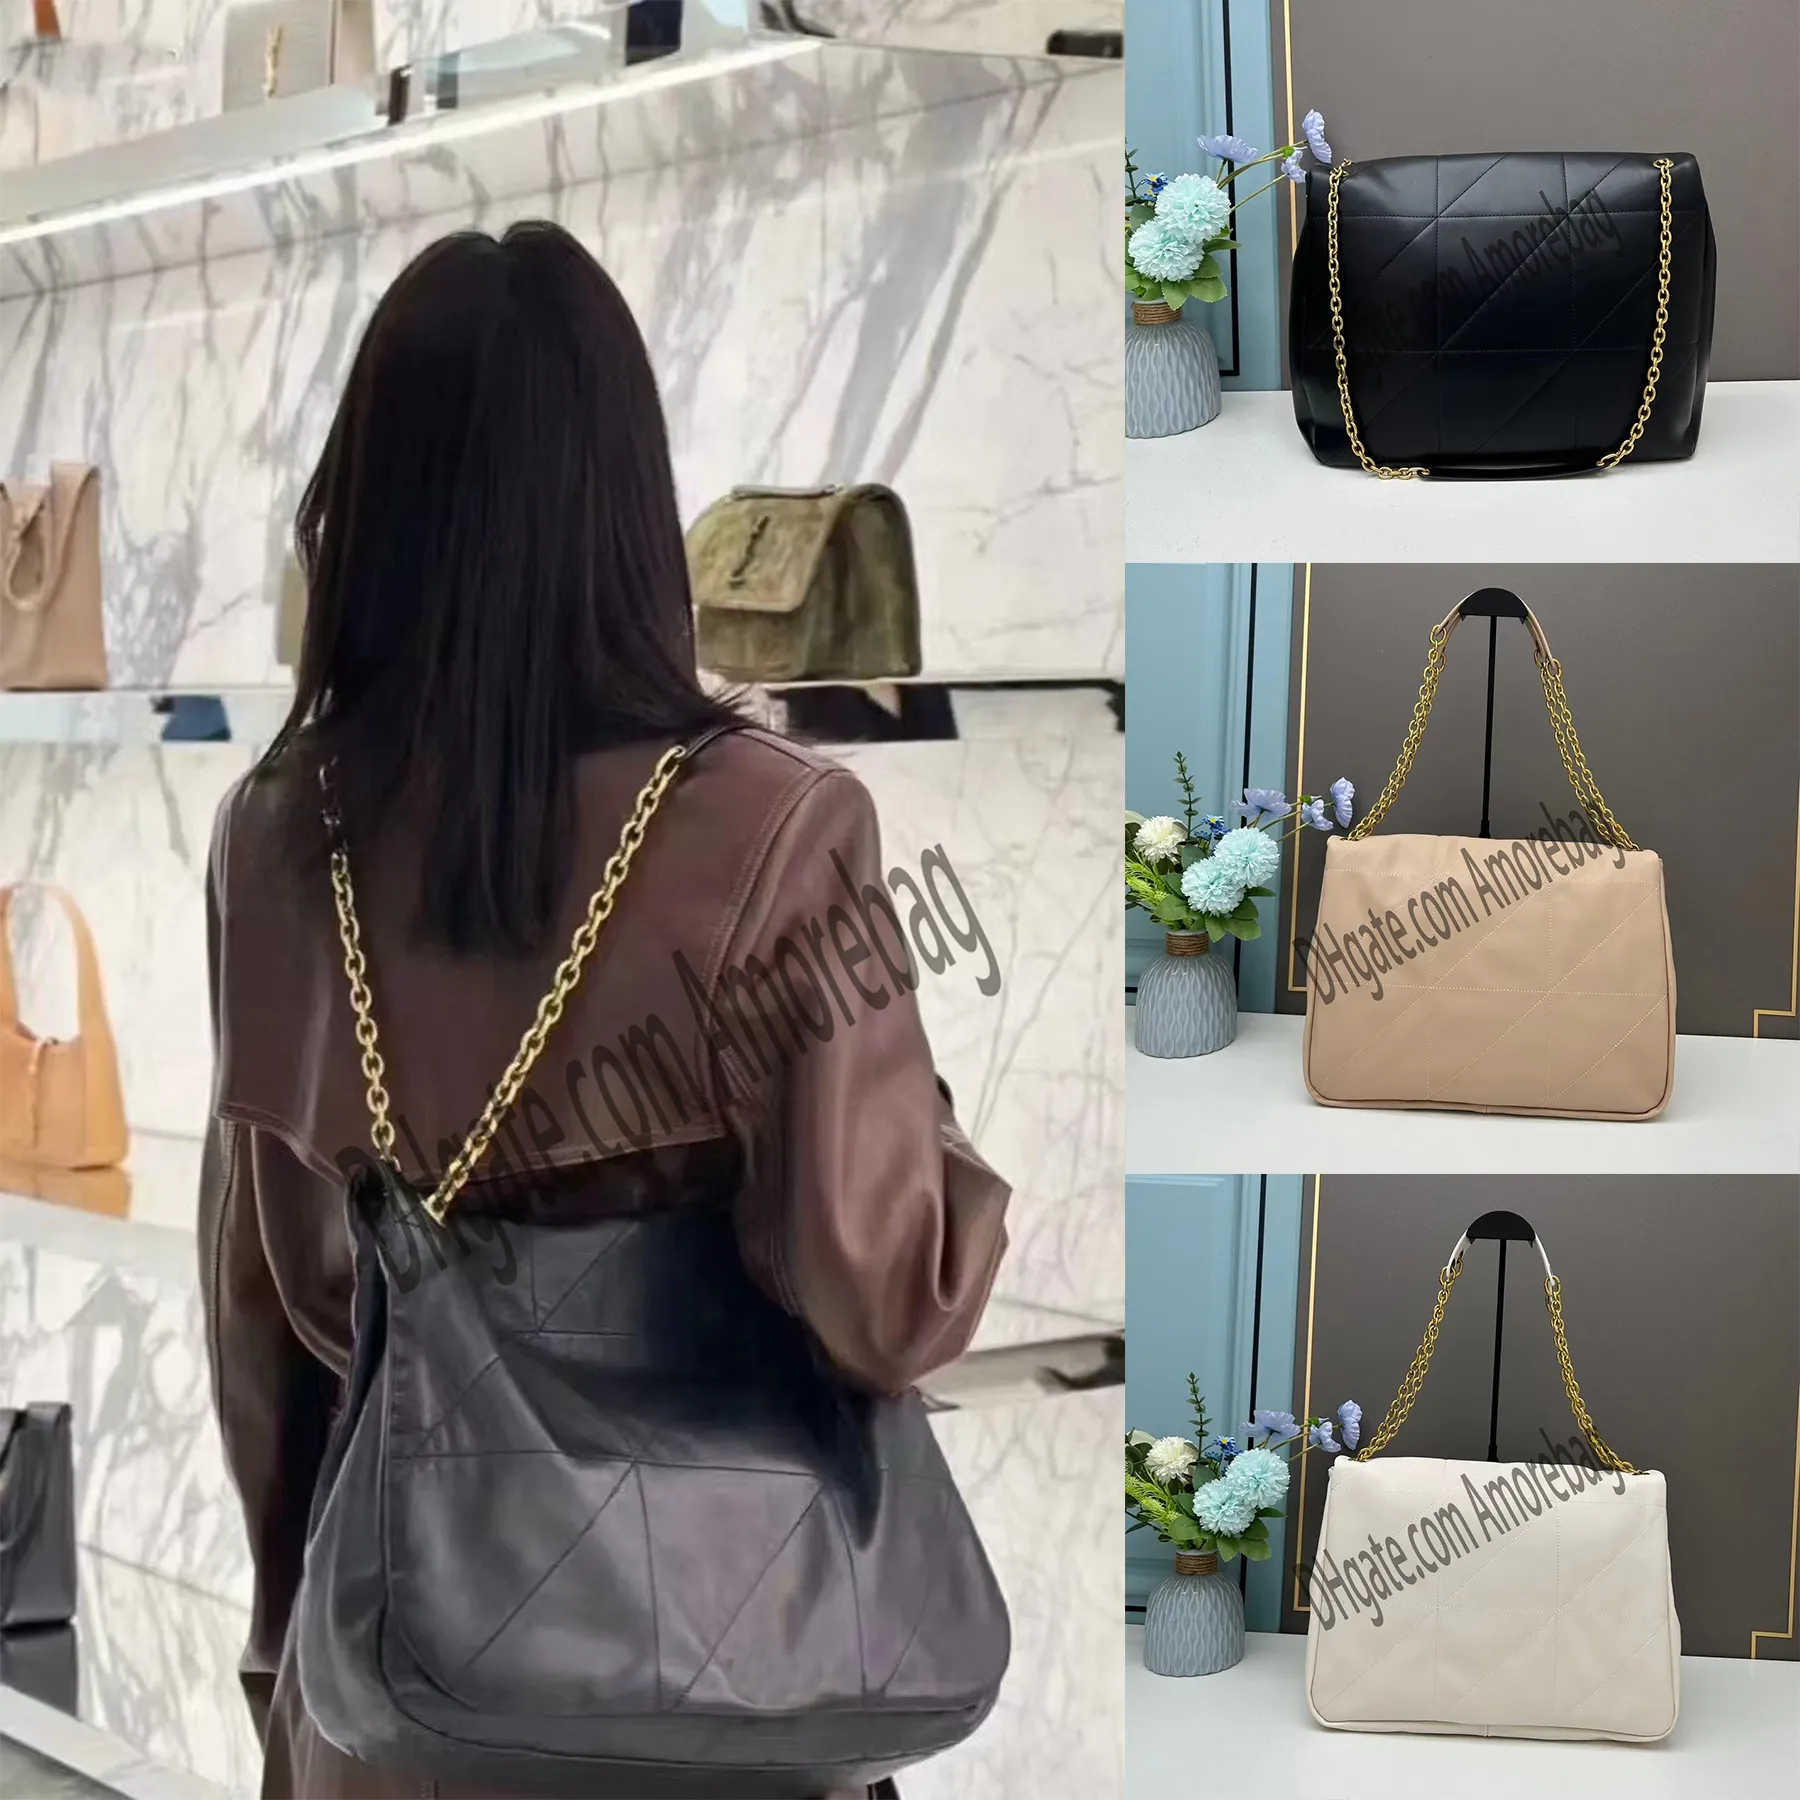 Jamies tasarımcı çanta çapraz çanta çanta çanta omuz çantası jamie el çantası zinciri siyah beyaz çanta kadınlar son moda kılıfları deri tote çanta